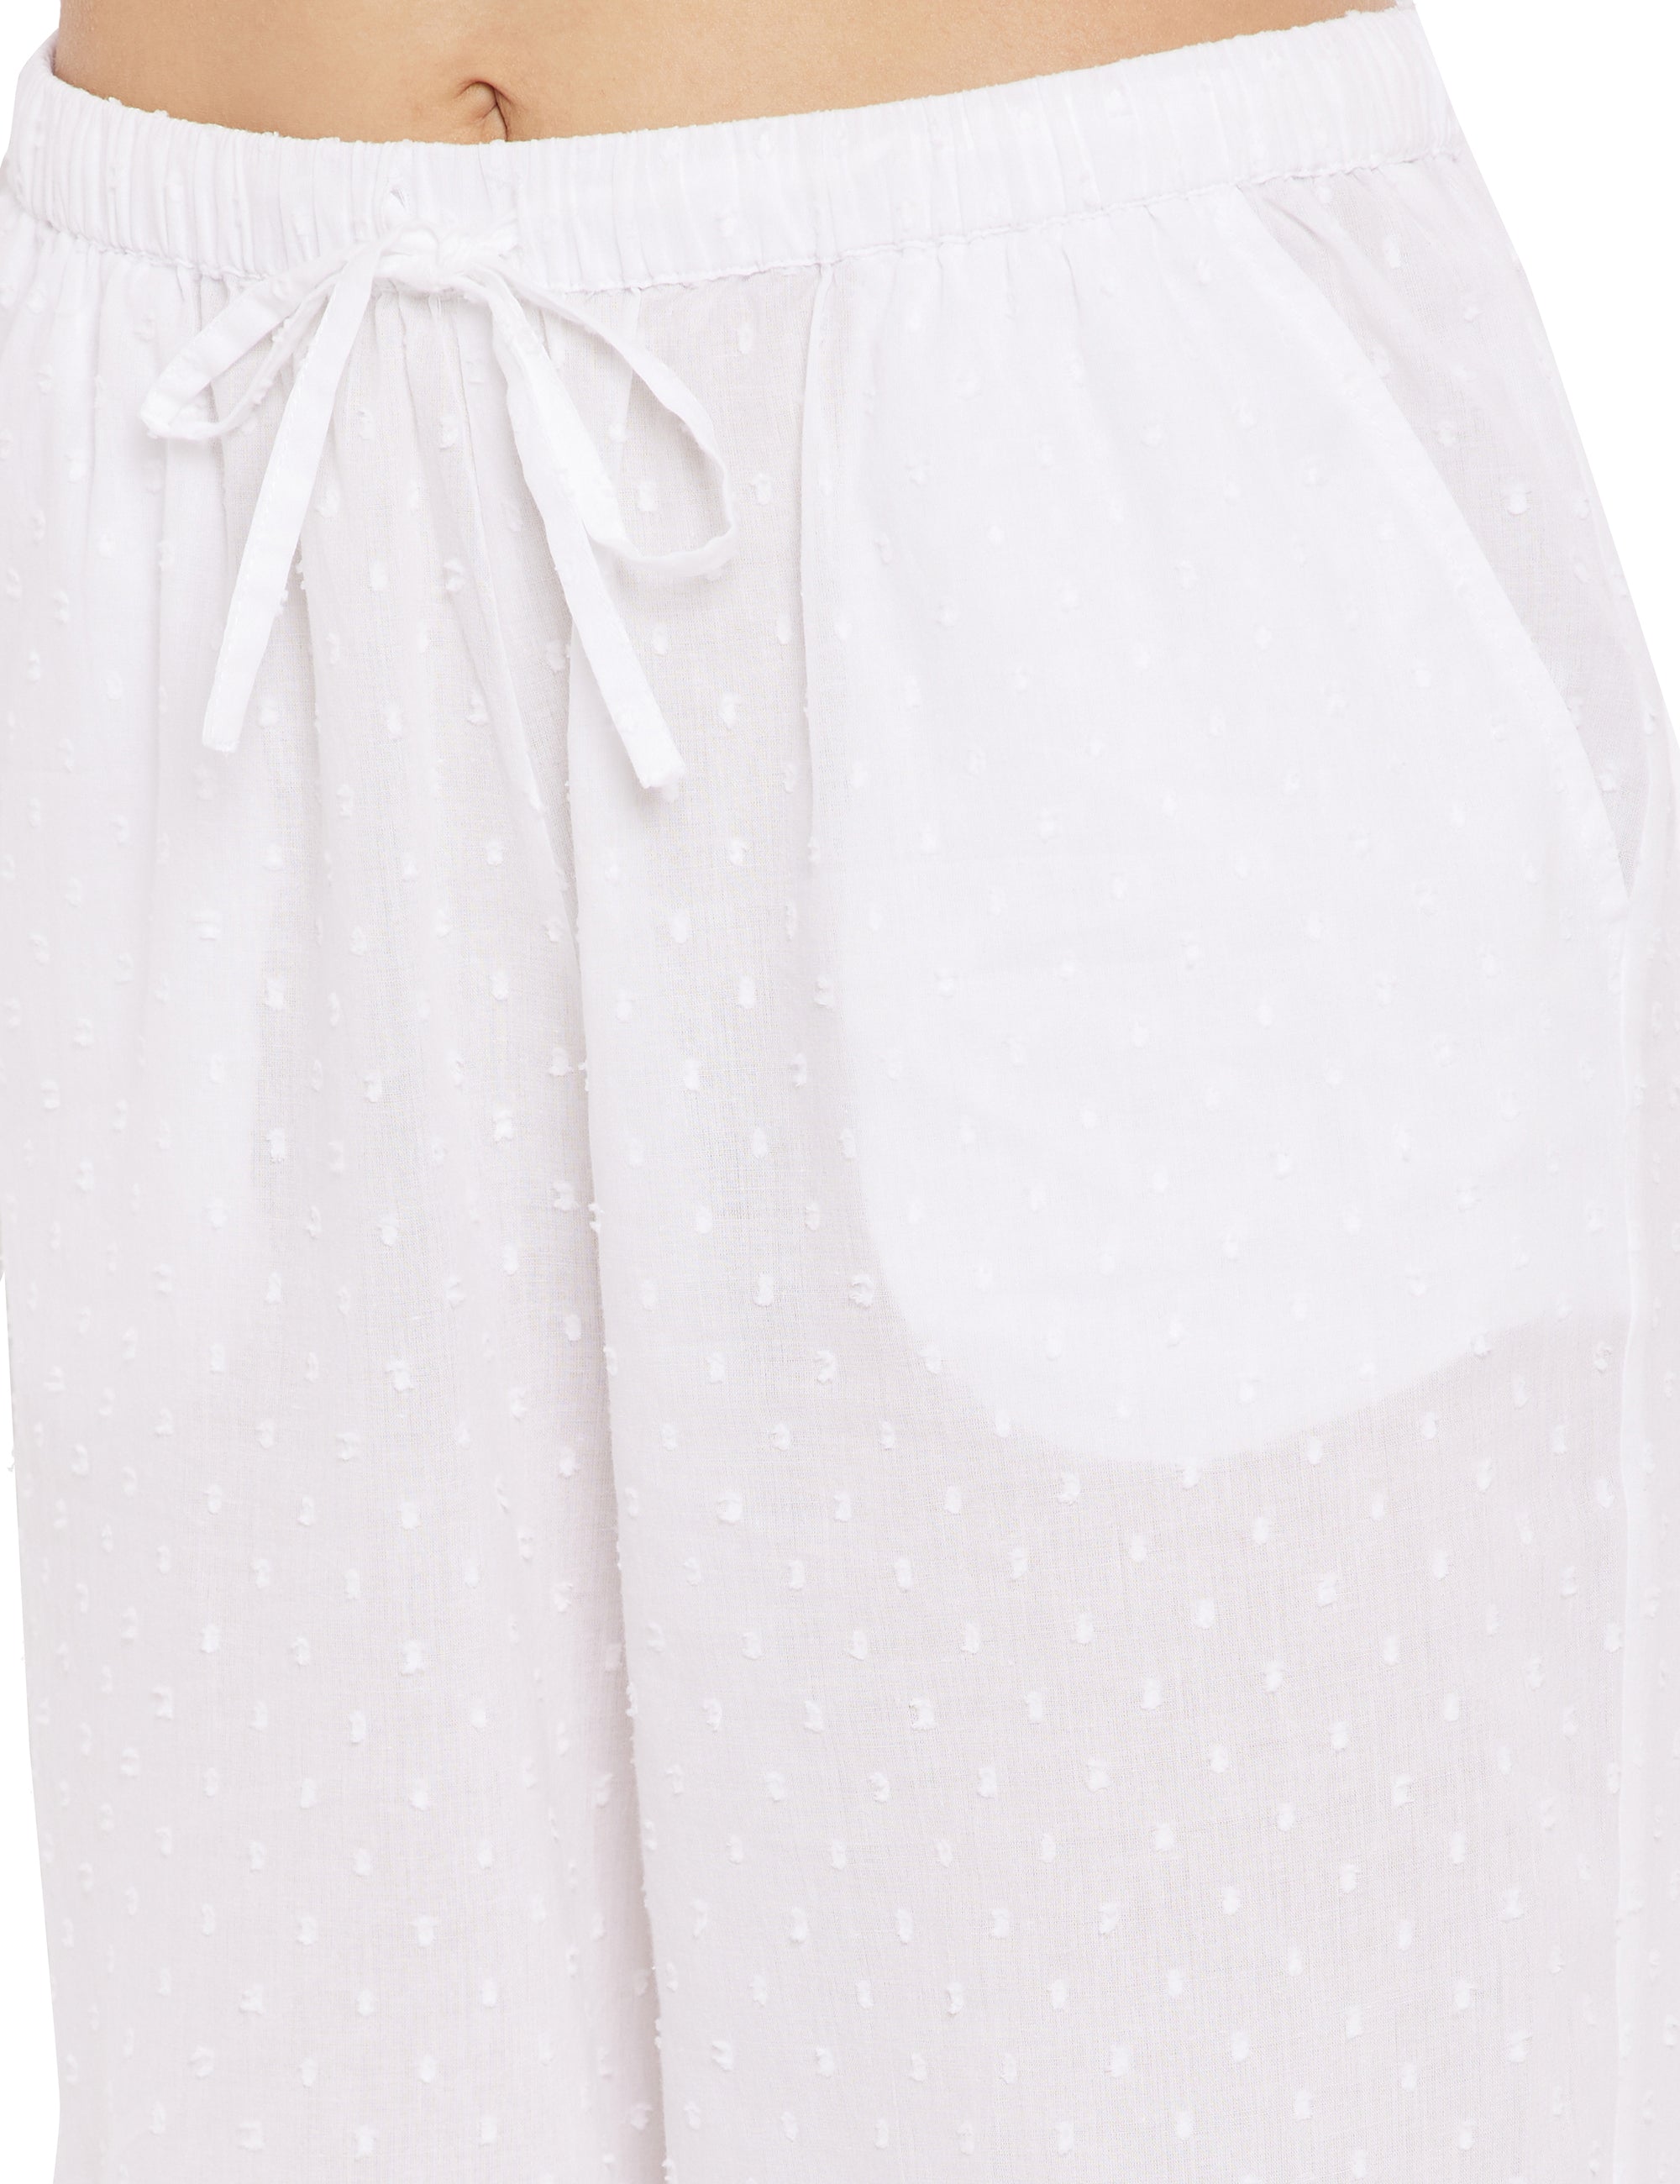 Martha Cotton Lace Half Sleeve Pyjamas Set Pajamas 35.00 Indigo Paisley